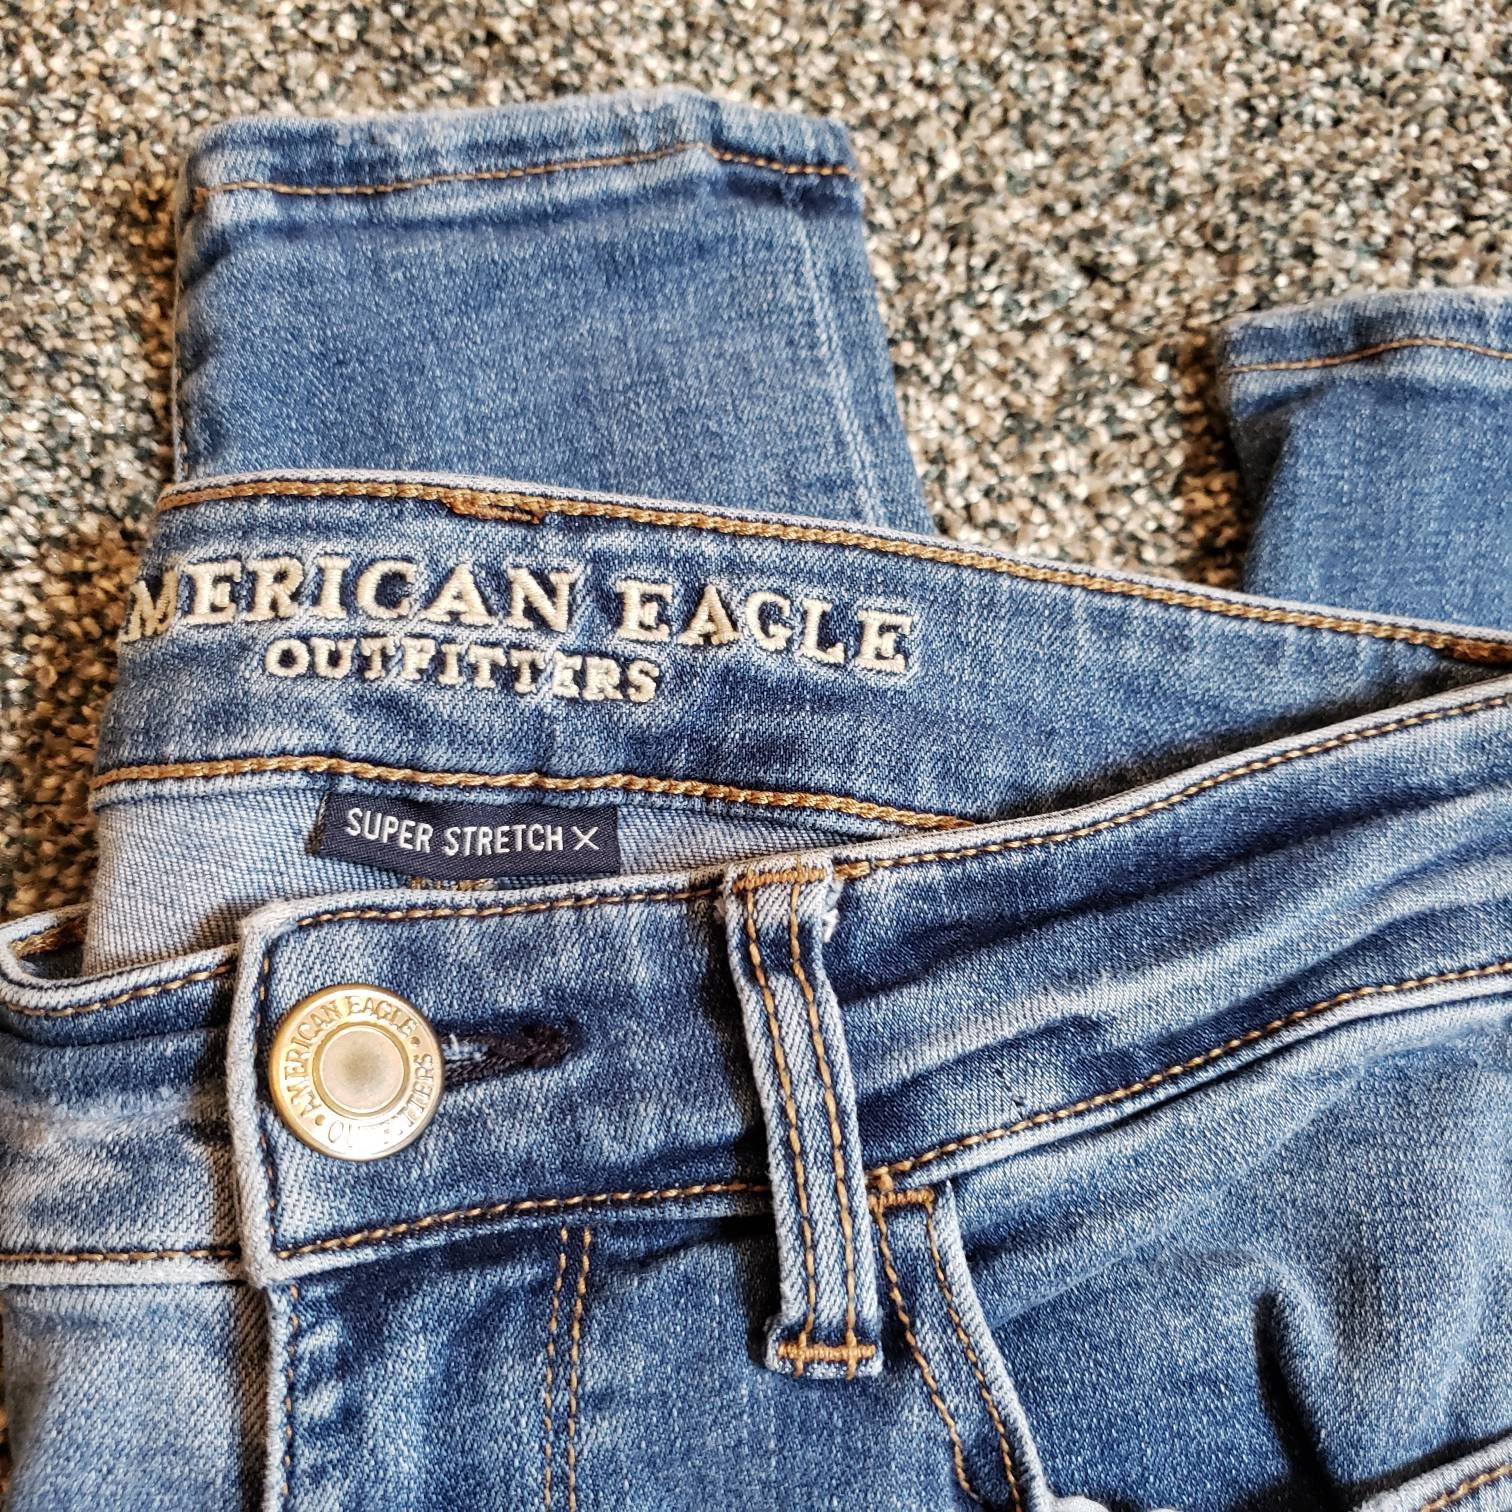 American Eagle, Jeans, American Eagle Jeans, Jeggins, Super Stretch, Size  0, Designer Jeans, Vintage Jeans, Junior Jeans, Girls J 